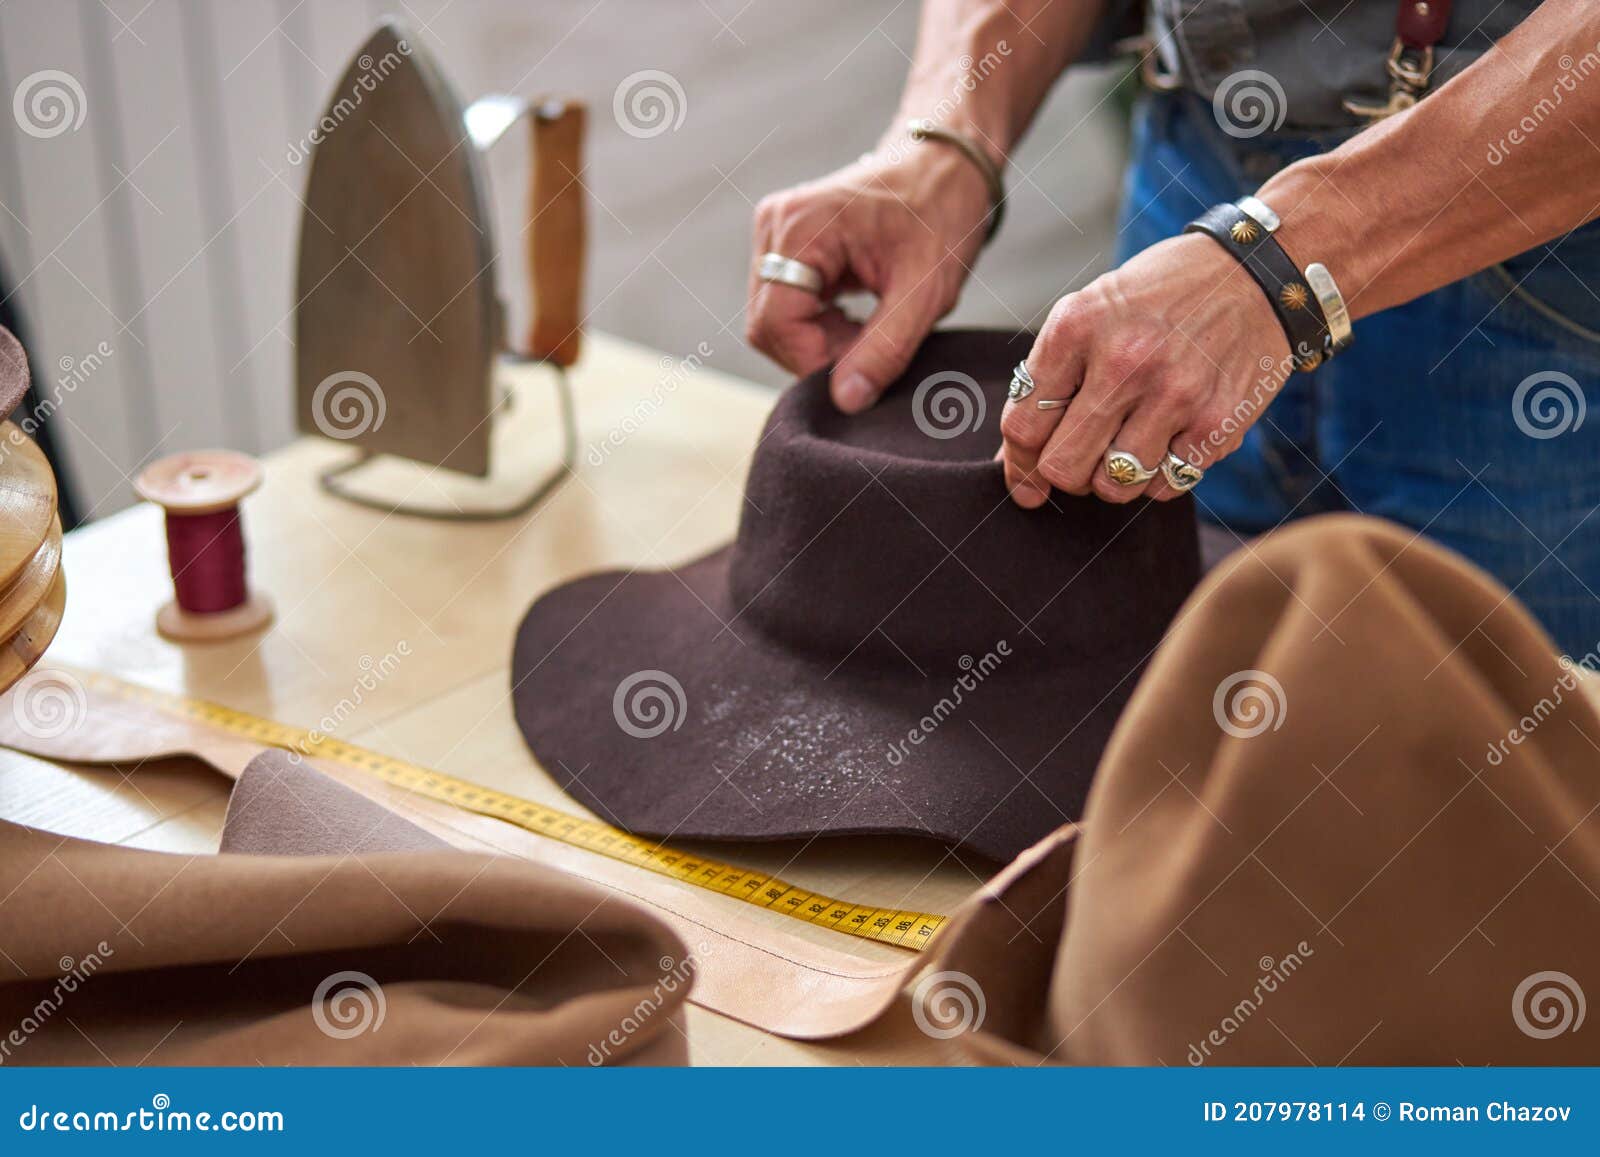 https://thumbs.dreamstime.com/z/dise%C3%B1ador-atelier-trabajador-sombrero-de-coser-en-taller-hombre-trabajo-productivo-sobre-nueva-colecci%C3%B3n-studiofashion-y-vogue-207978114.jpg